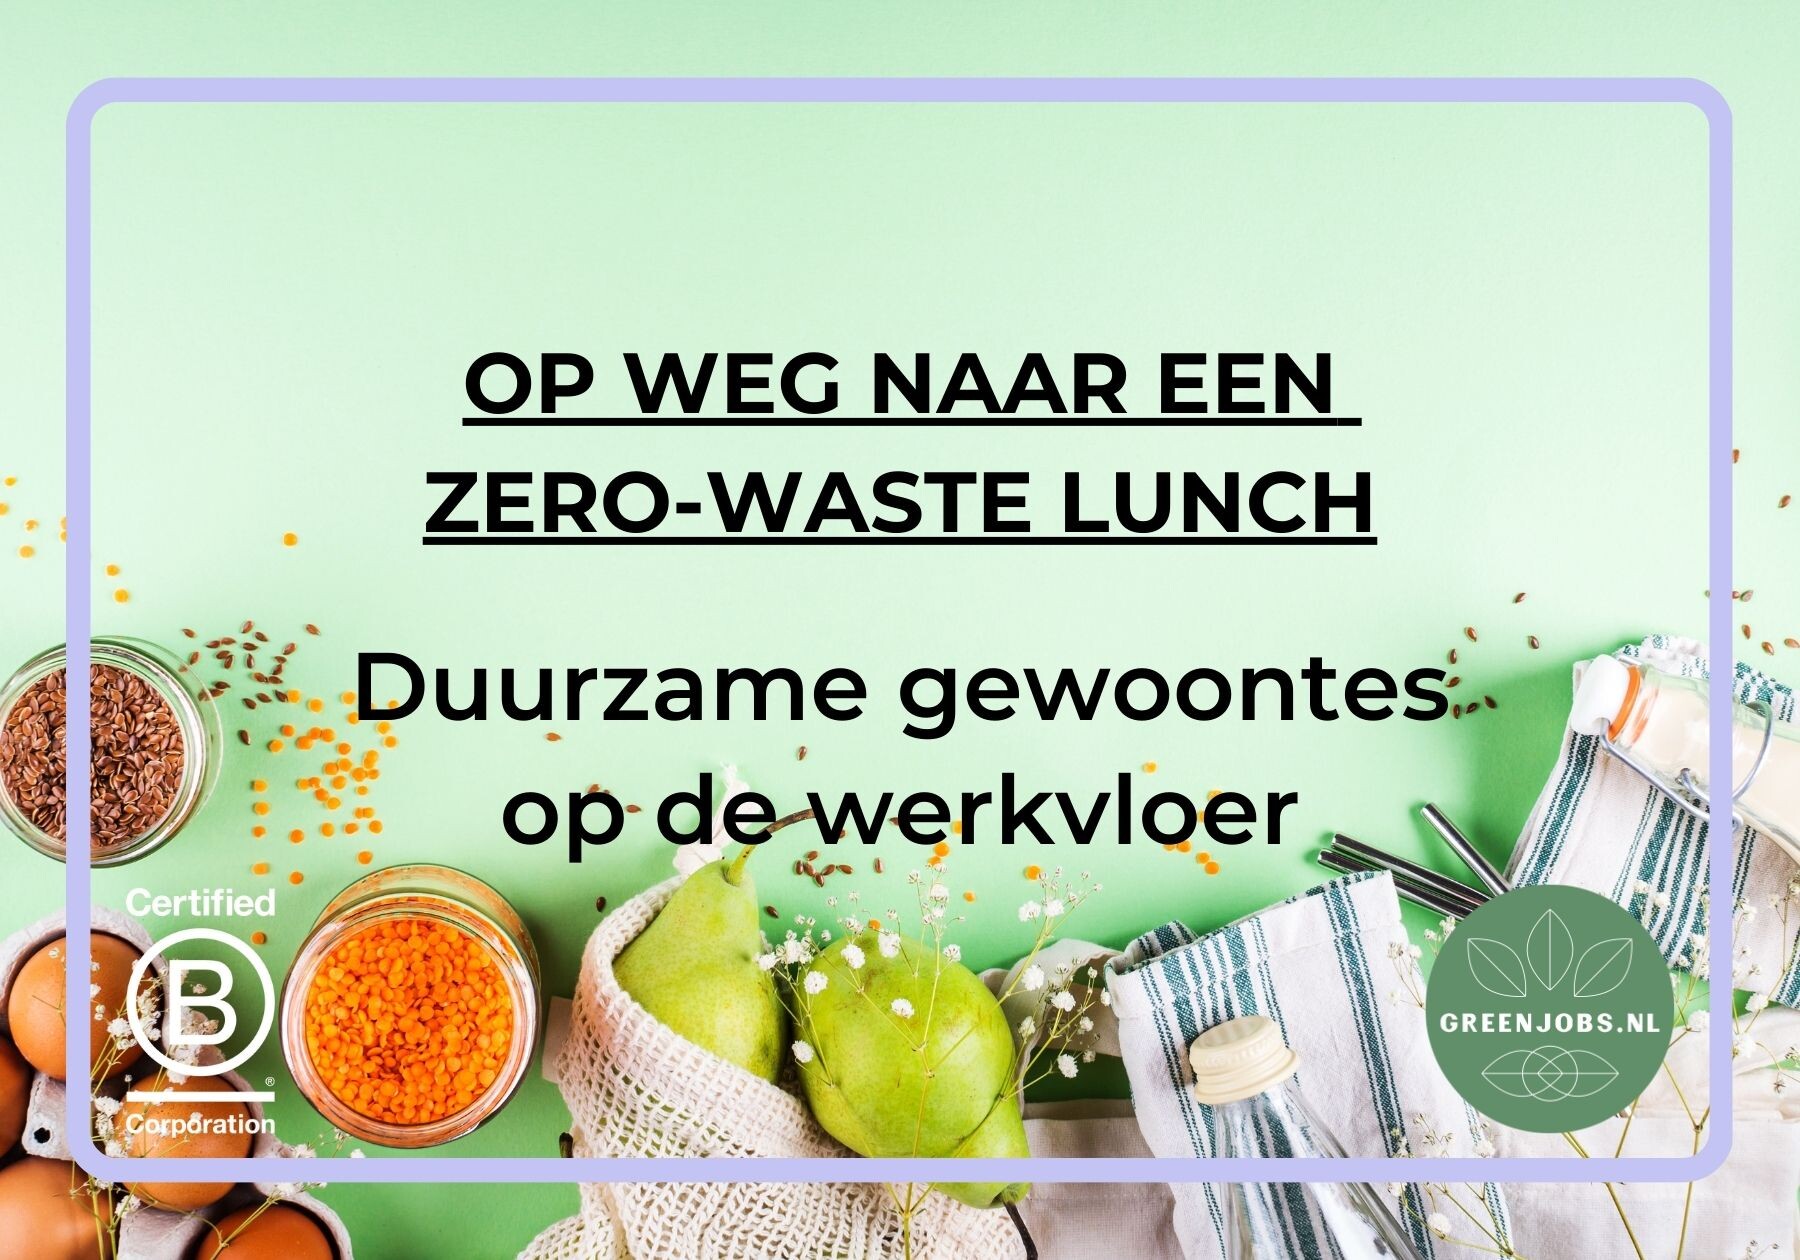 Op weg naar een zero-waste lunch: Duurzame gewoontes op de werkvloer